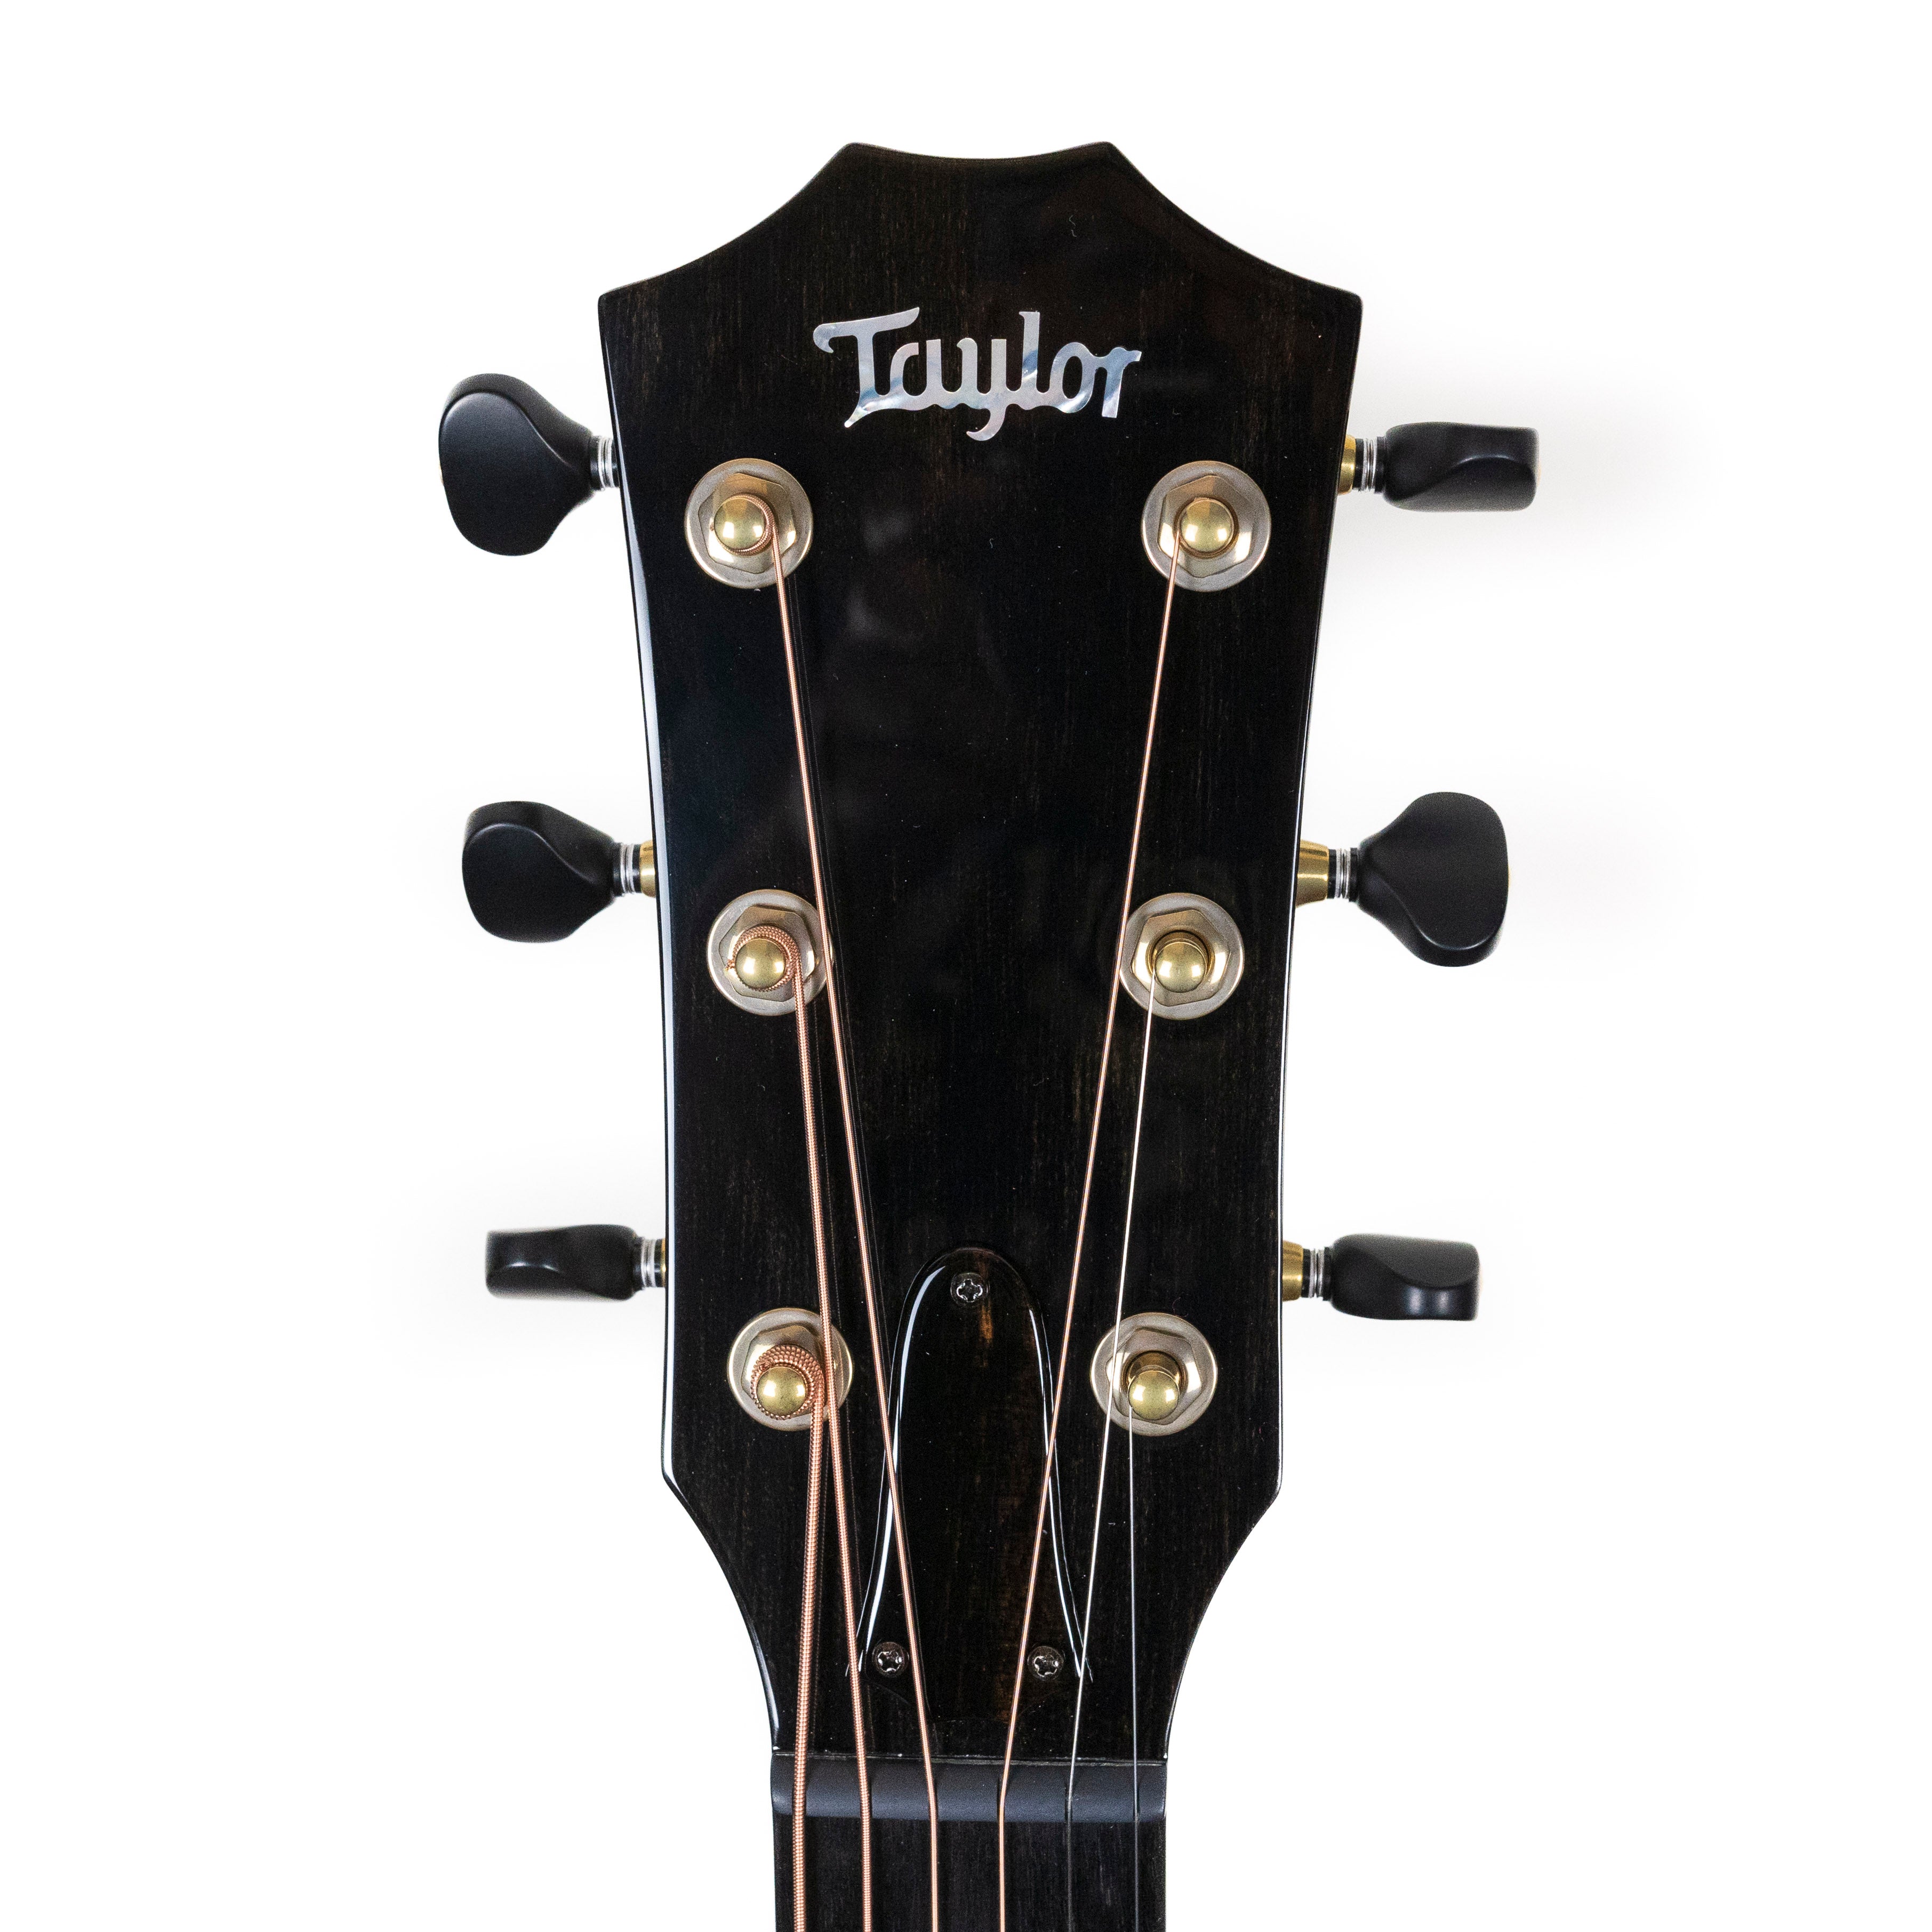 Taylor Custom GC #7, Lutz Spruce/Figured Maple